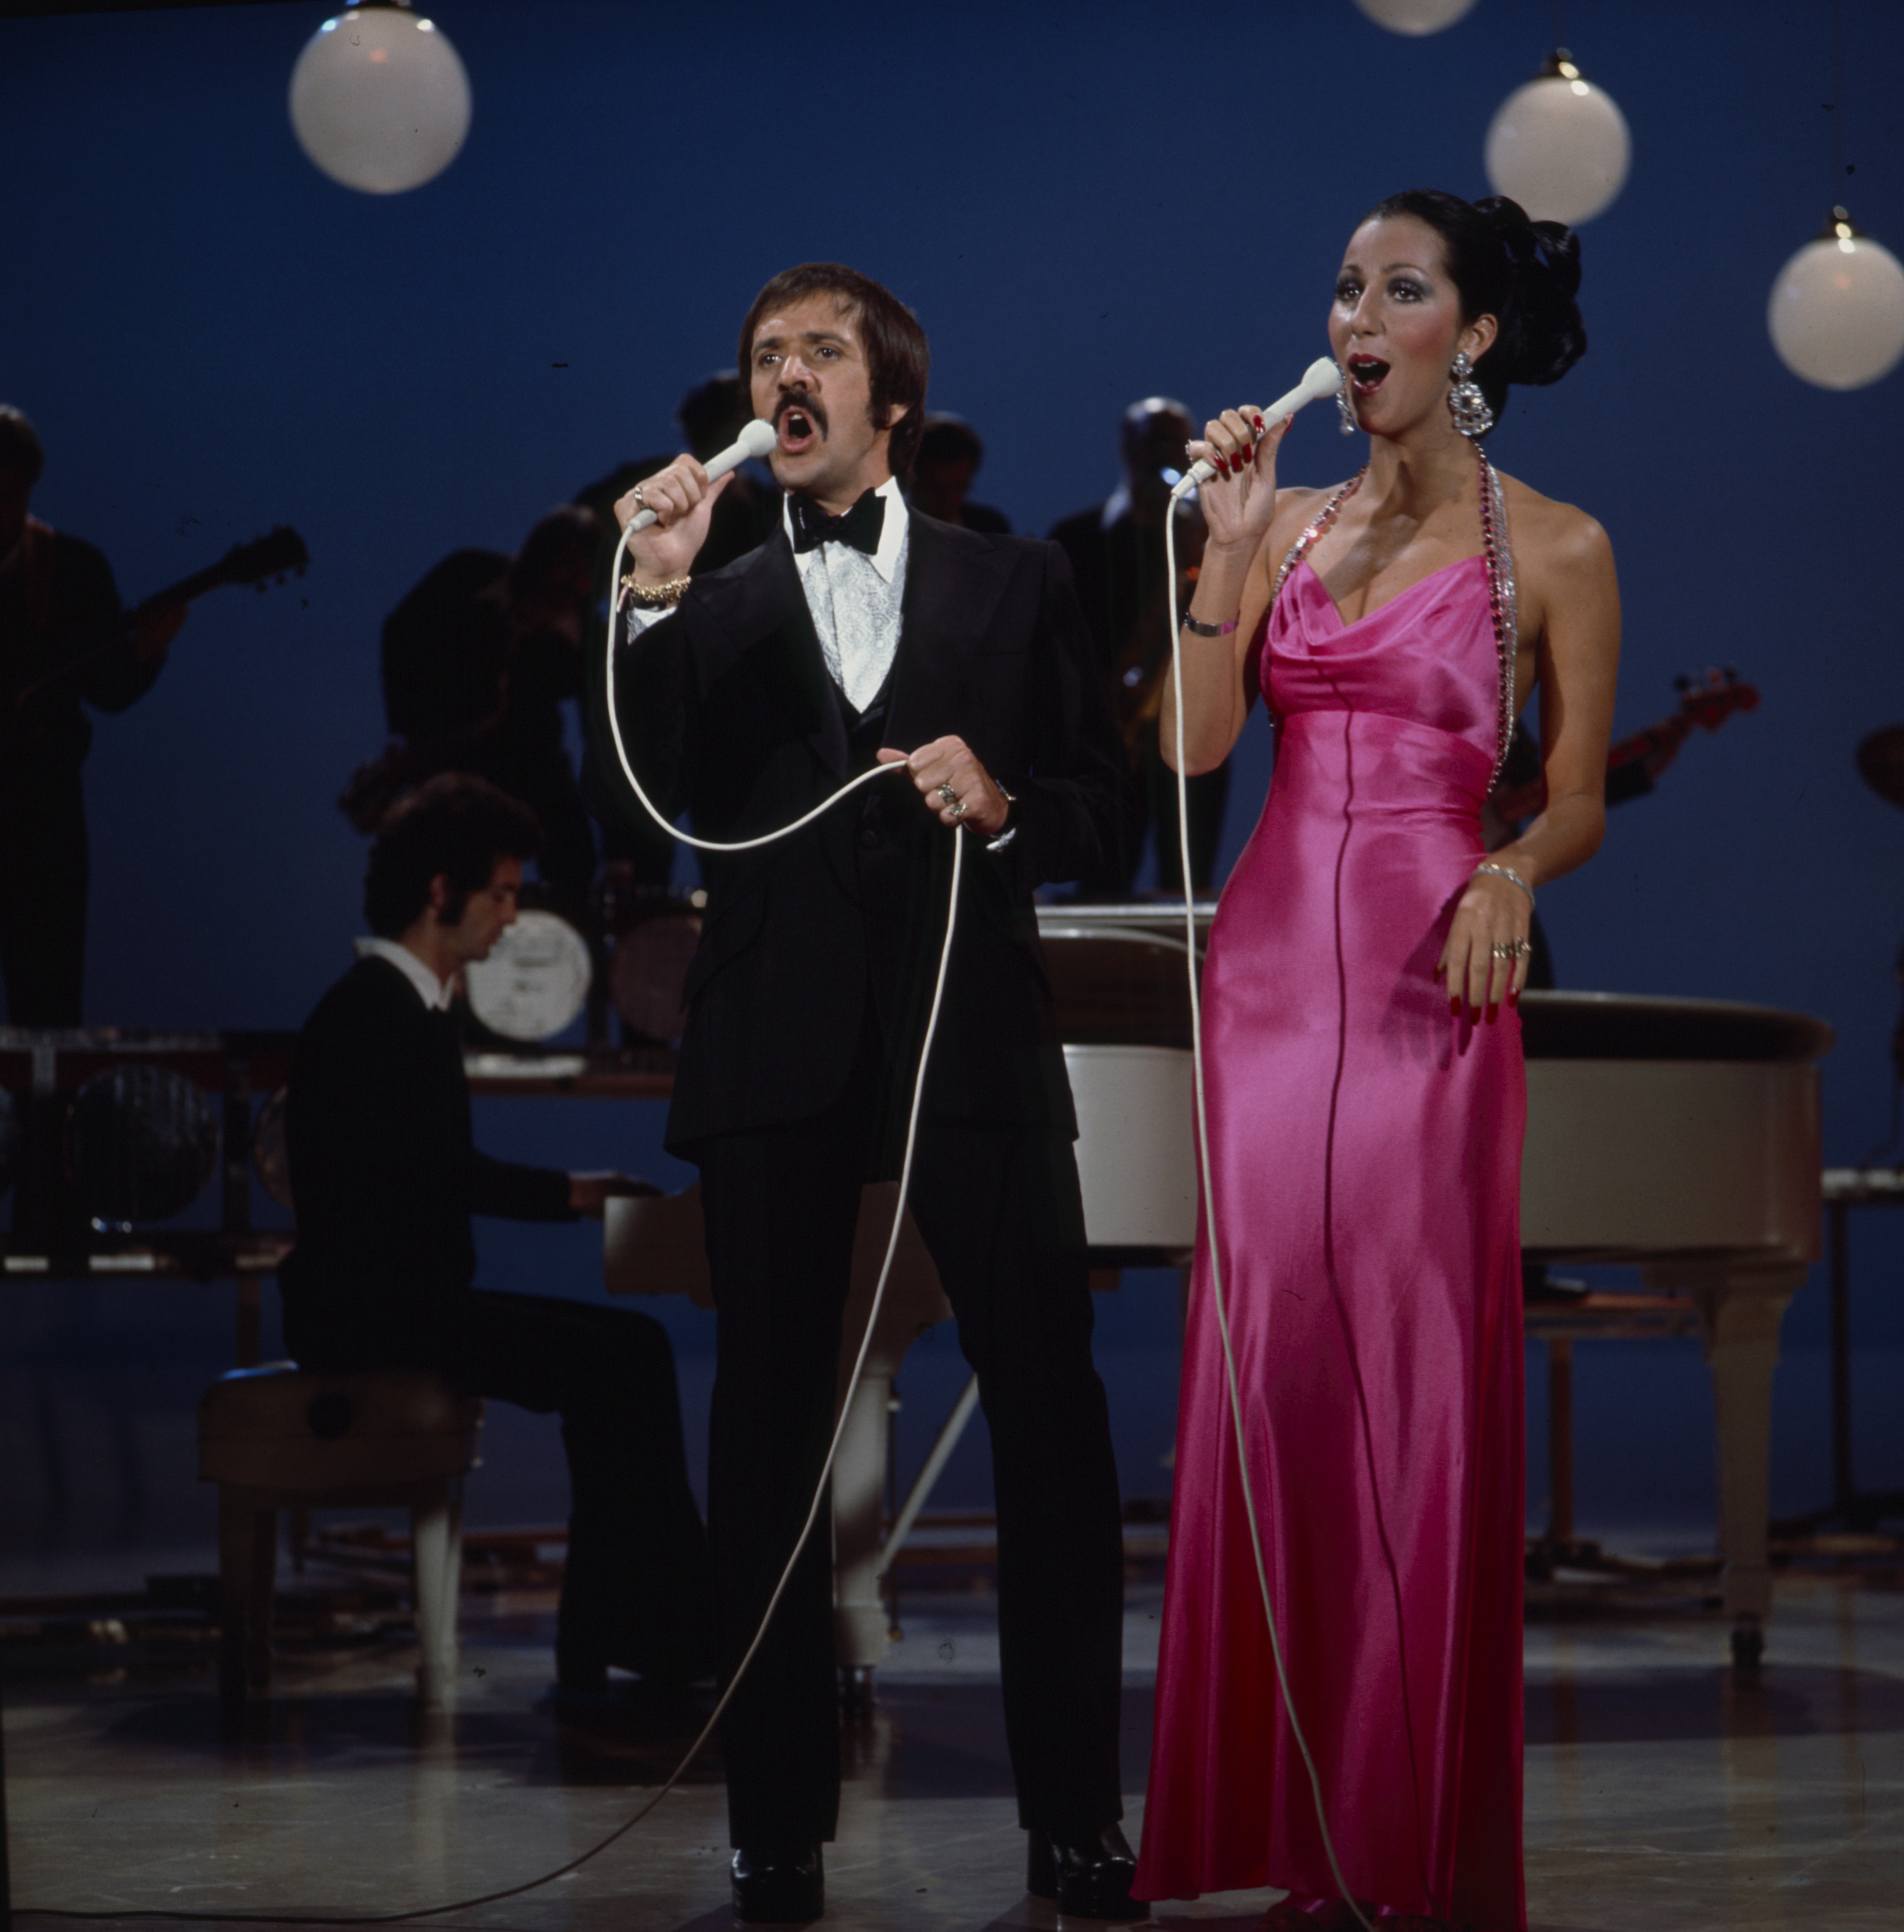 Sonny Bono und Cher bei ihrem Auftritt in der "The Sonny Comedy Revue" | Quelle: Getty Images